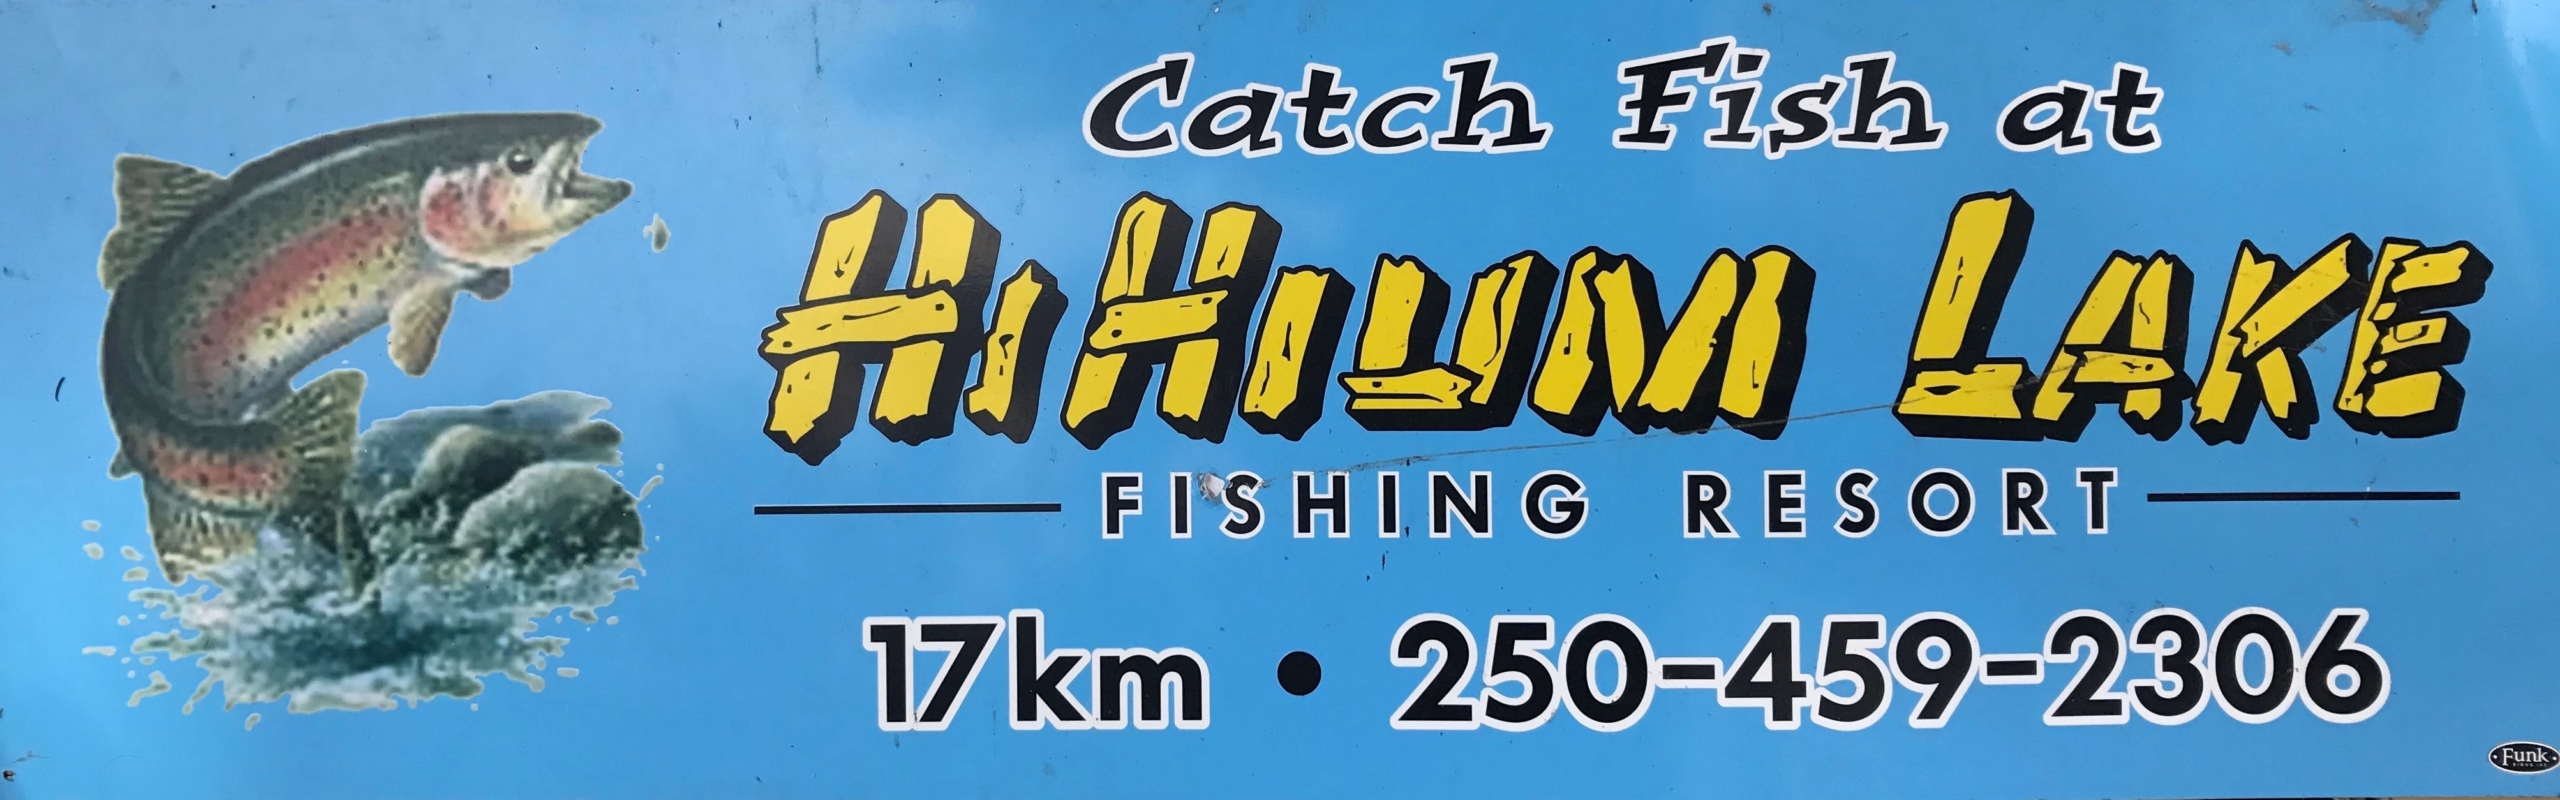 HiHium Lake Fishing Resort